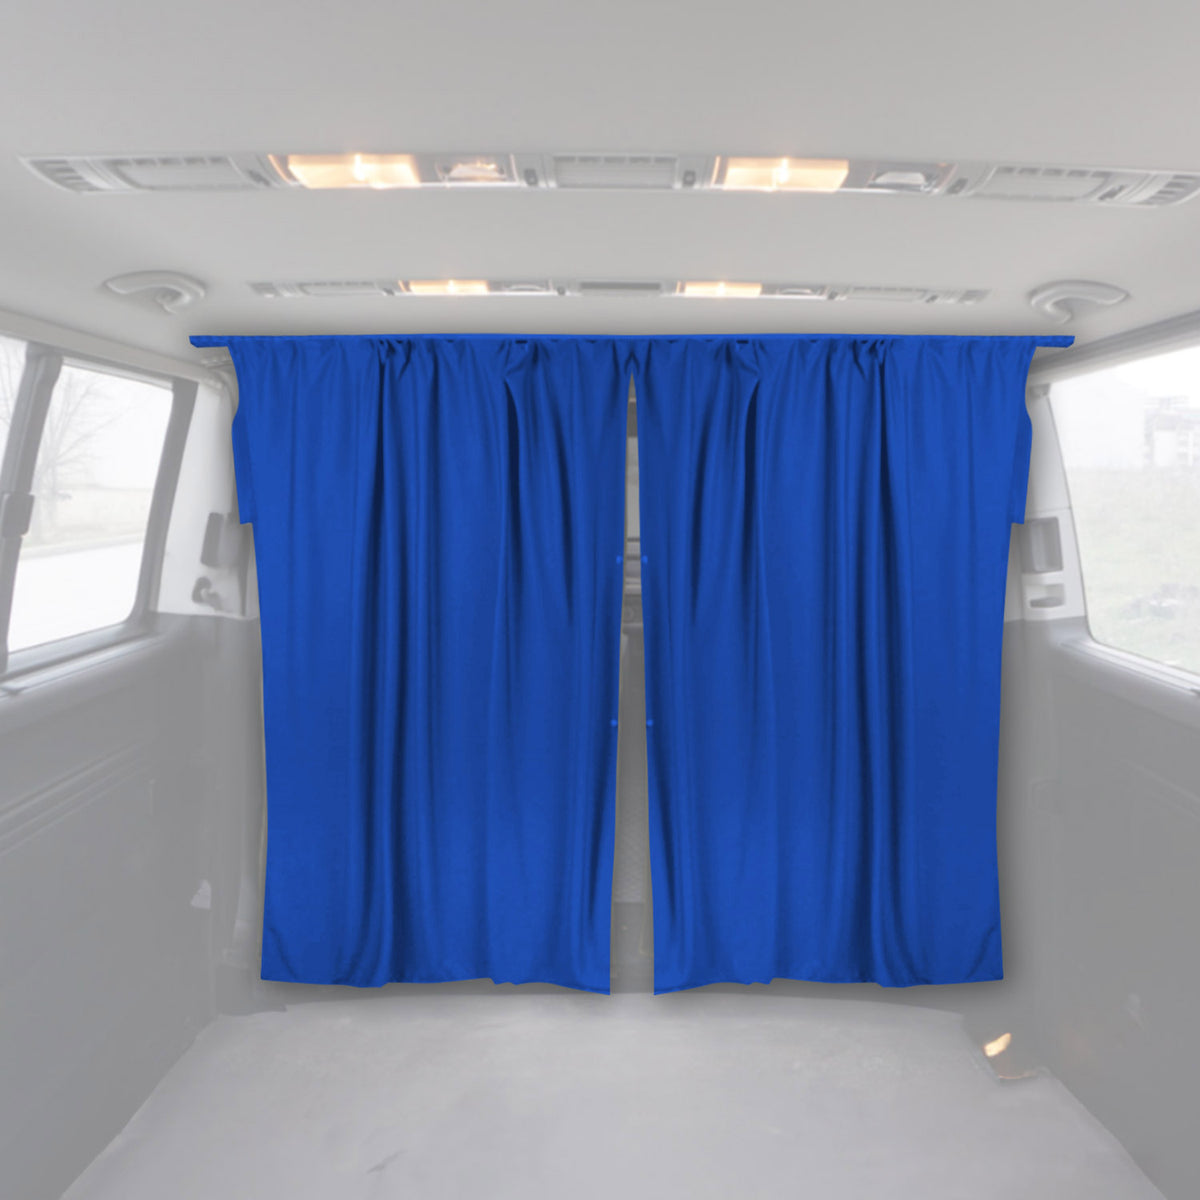 Fahrerhaus Führerhaus Maß Gardinen für Mercedes Vito Viano W639 W447 Blau